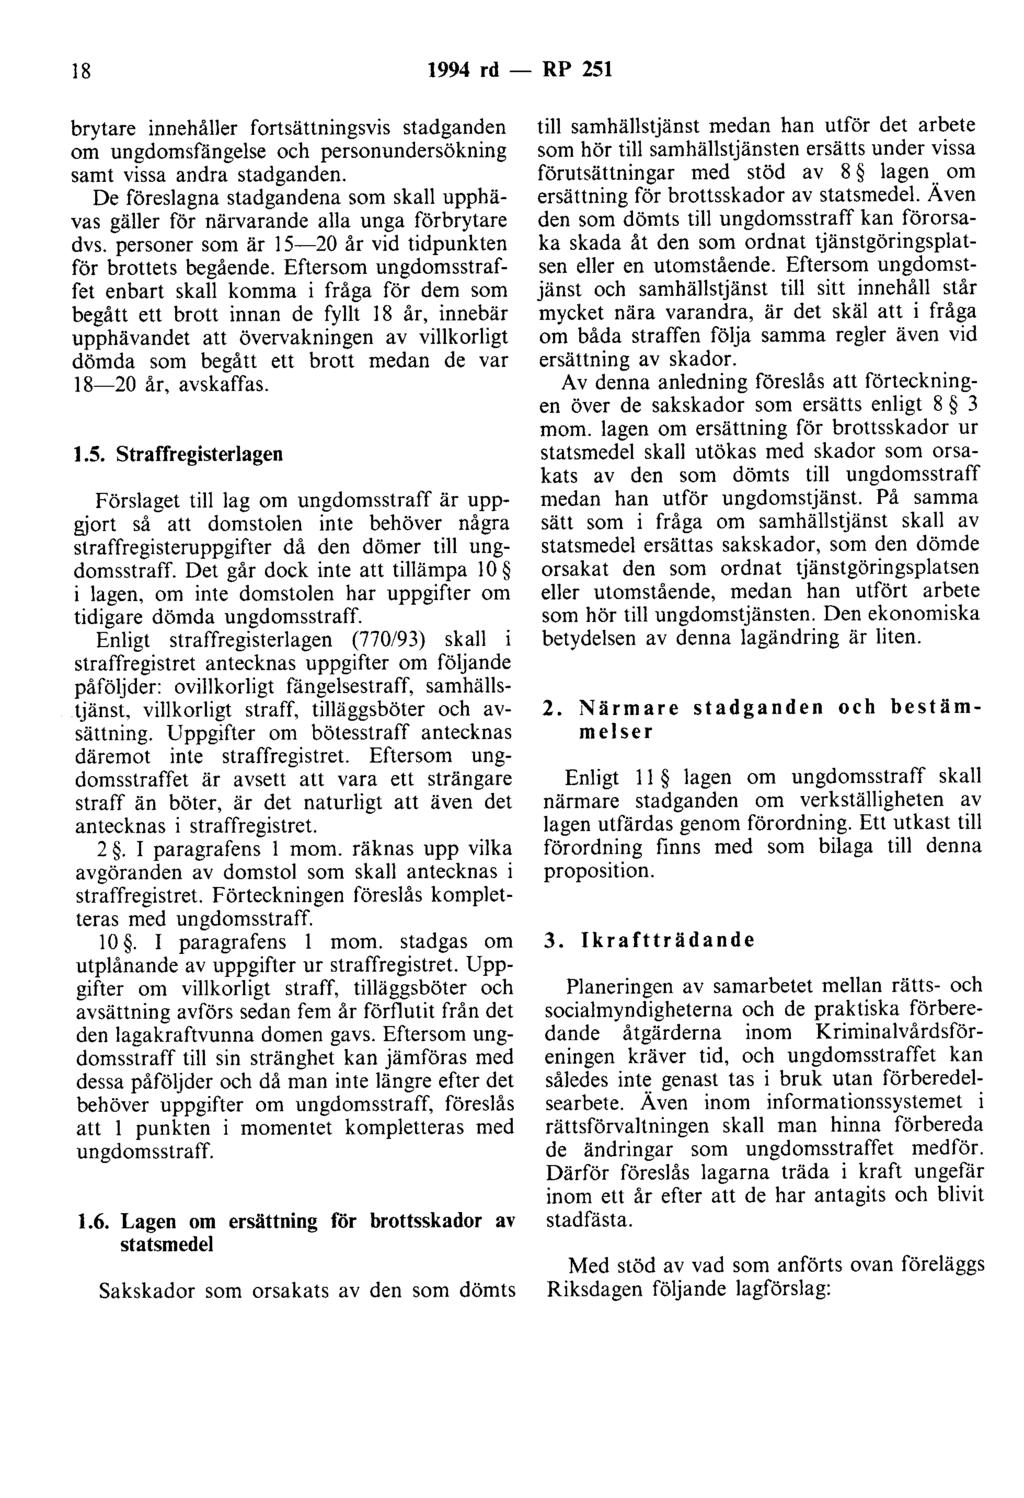 18 1994 rd - RP 251 brytare innehåller fortsättningsvis stadganden om ungdomsfängelse och personundersökning samt vissa andra stadganden.